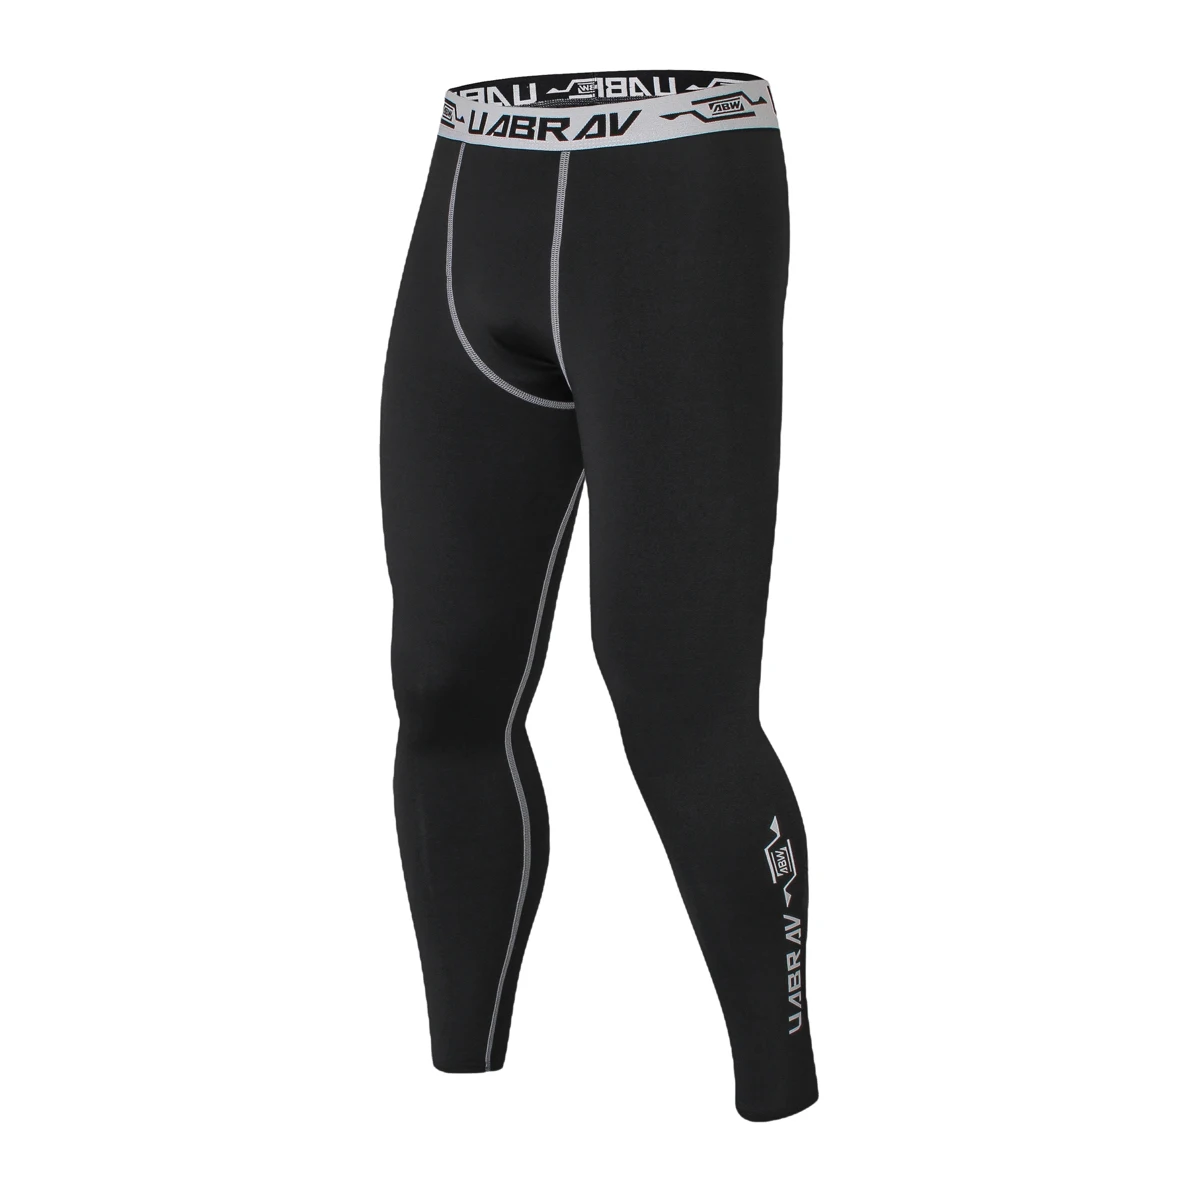 UABRAV Pro быстросохнущие мужские компрессионные штаны, колготки для бега, Спортивные Леггинсы, одежда для фитнеса, тренажерного зала, баскетбольные штаны, базовый слой - Цвет: Black